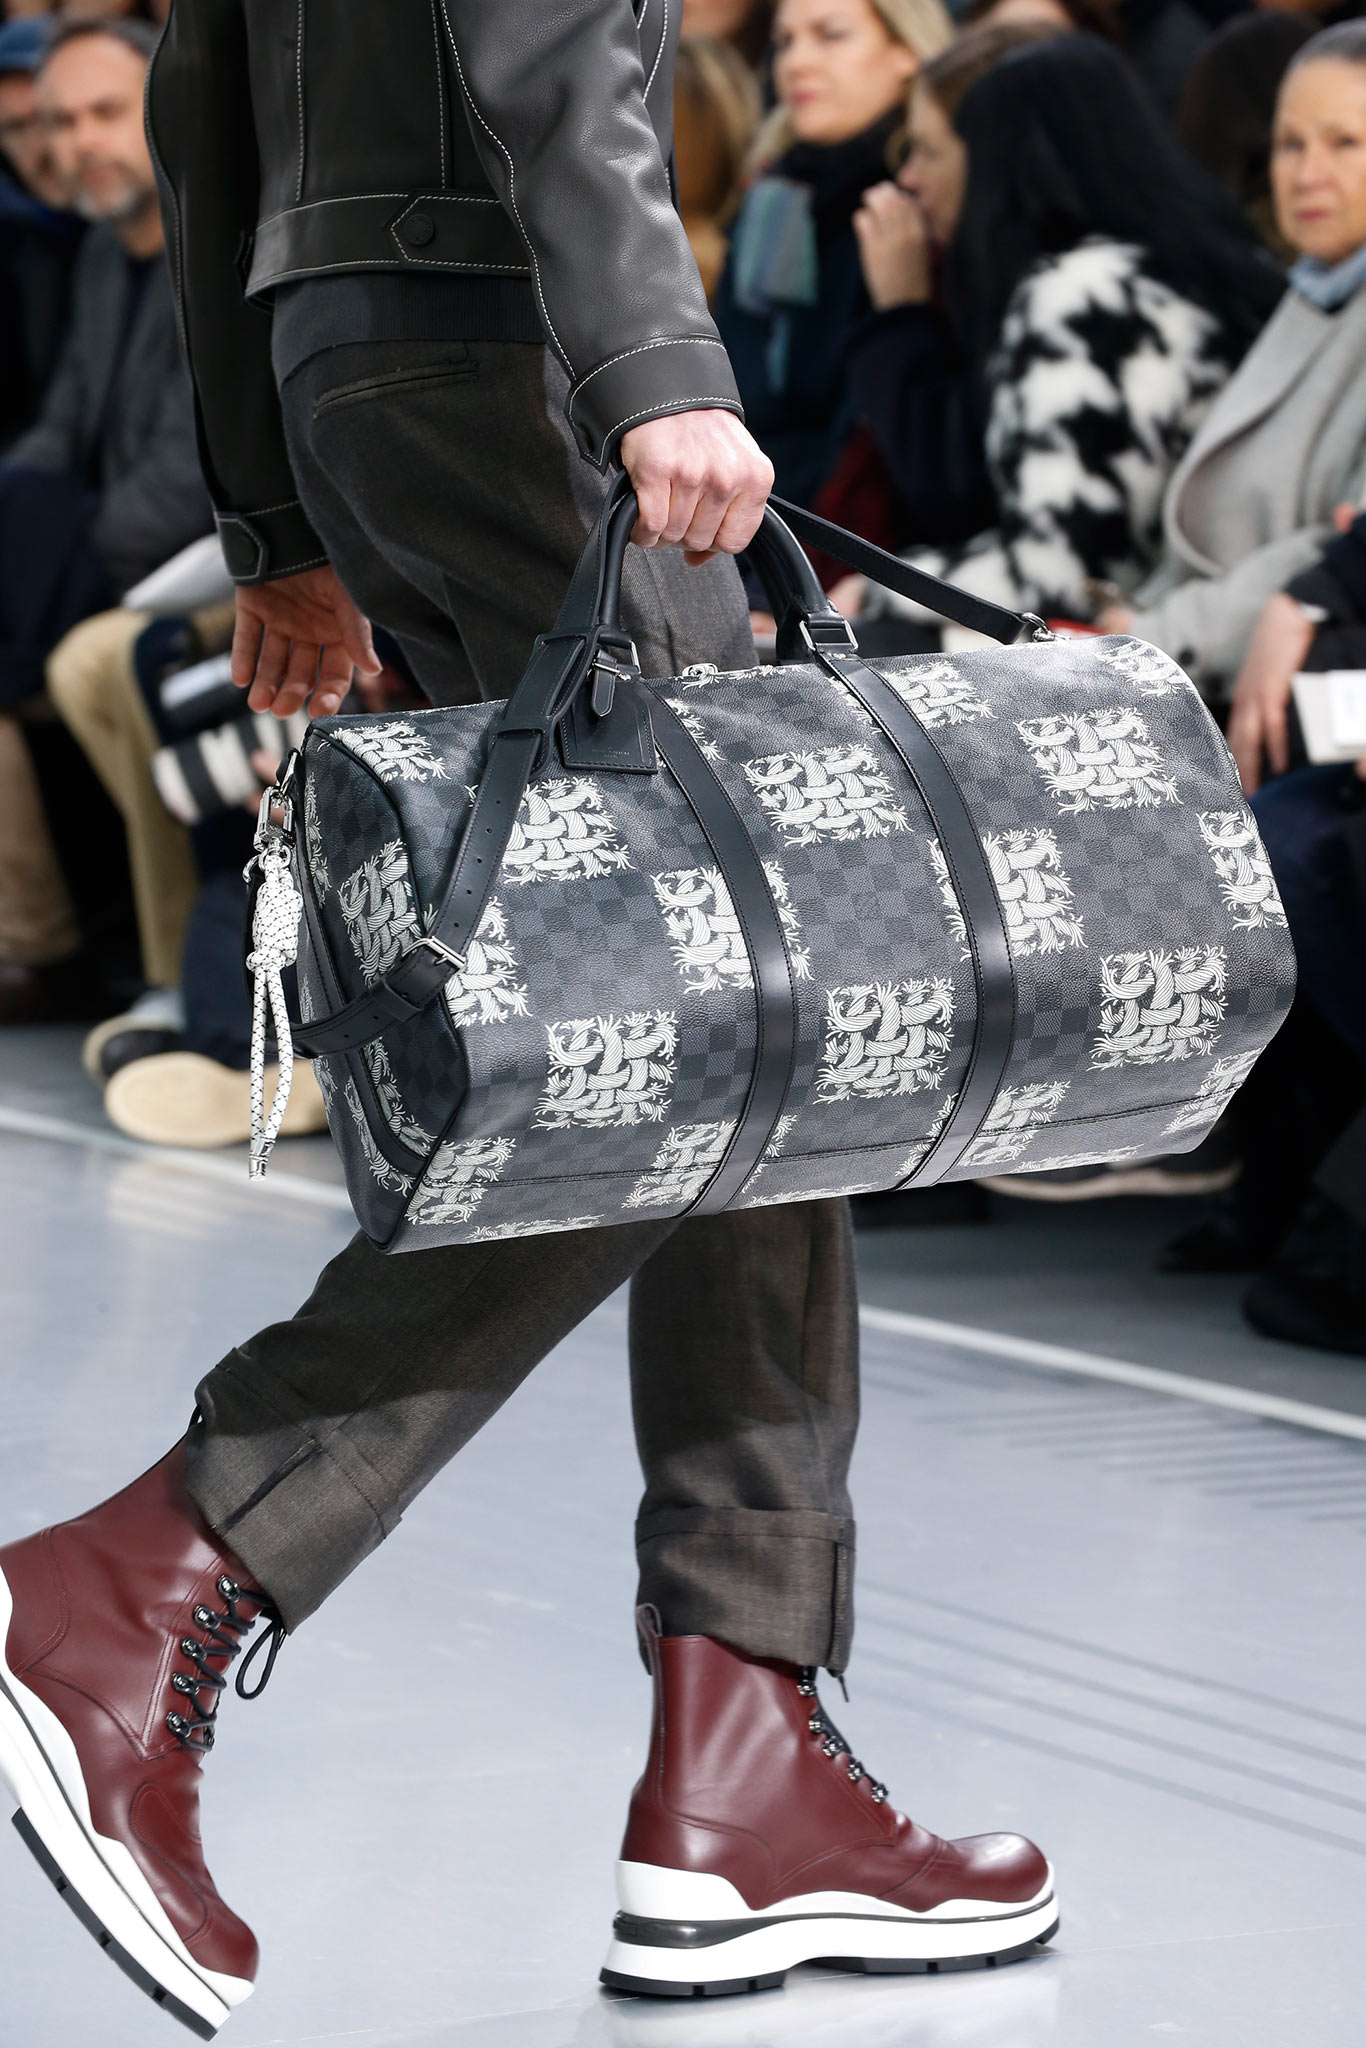 CrashingRED Styling Louis Vuitton bag: casual chic - CrashingRED